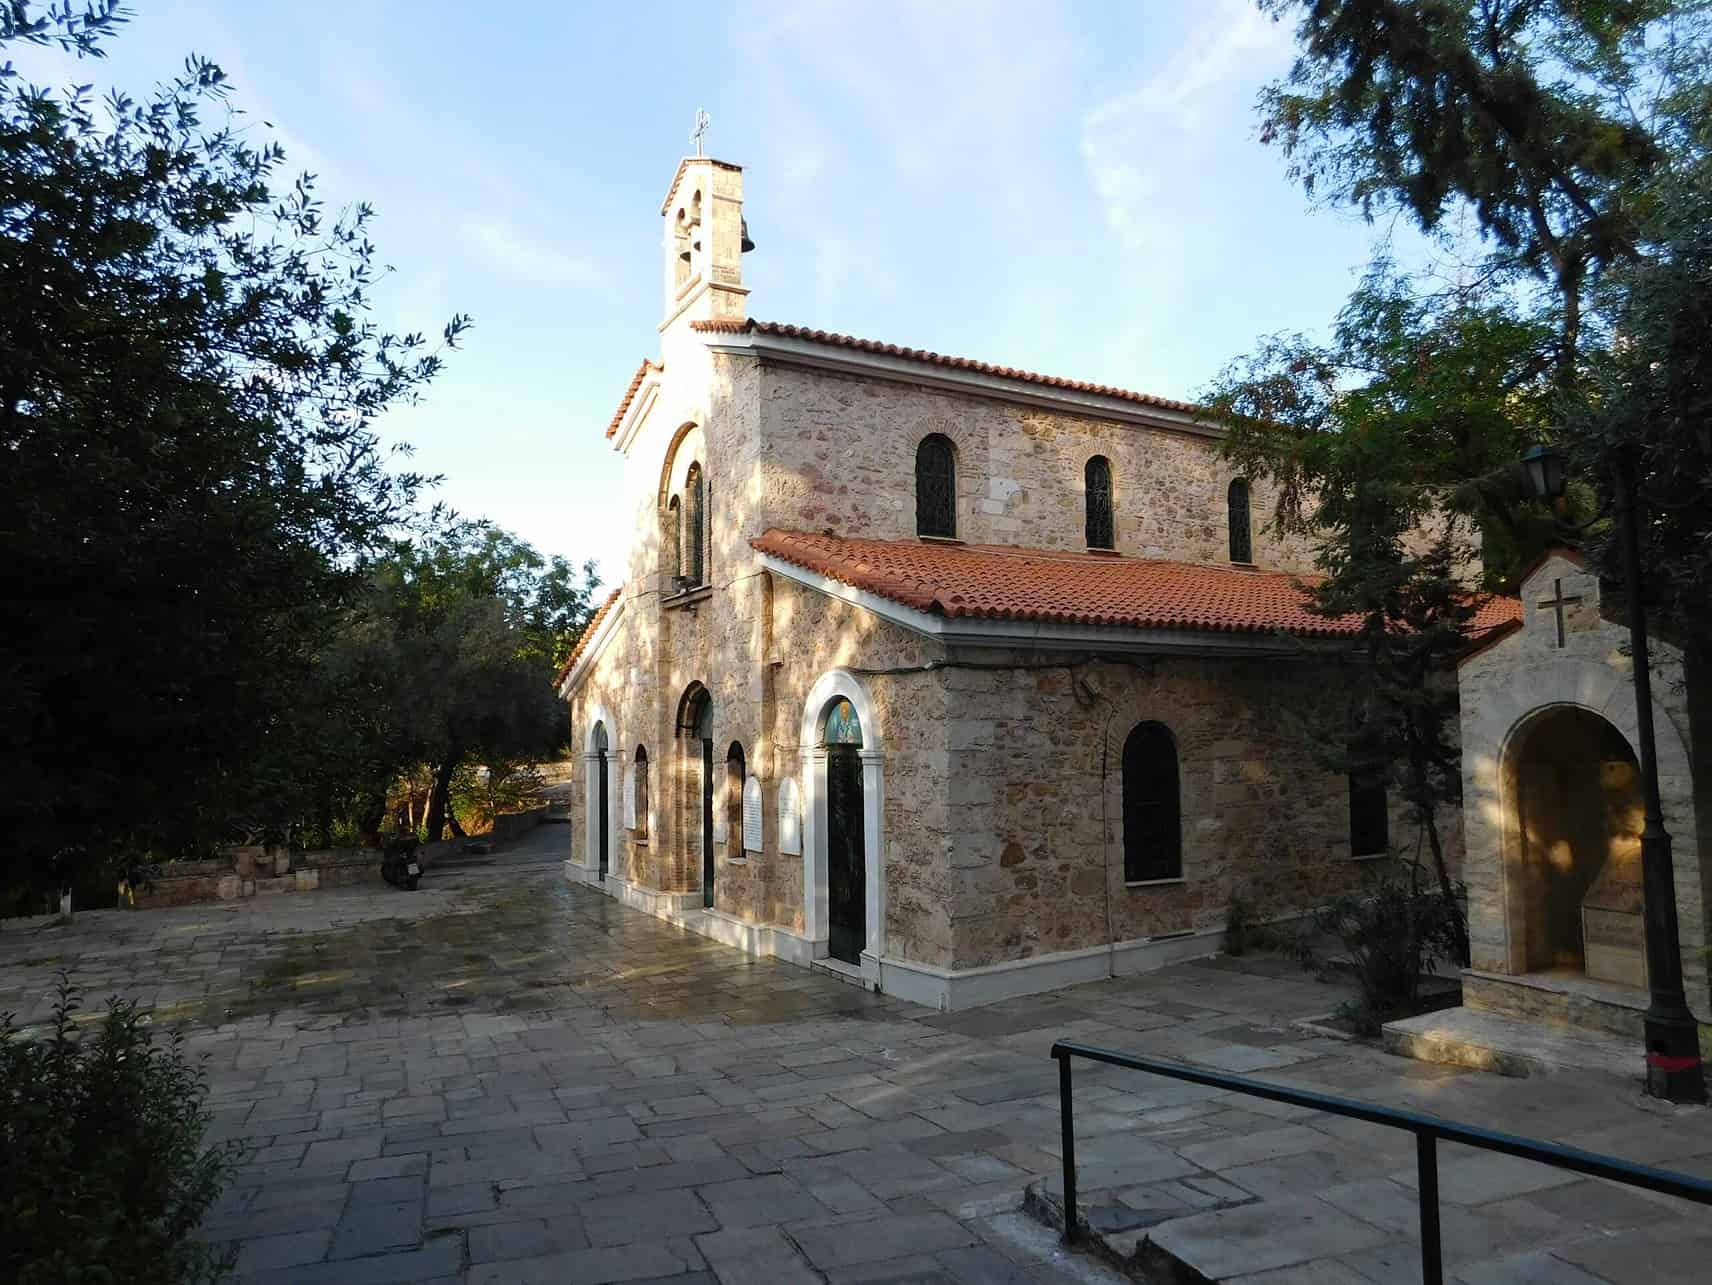 Agia Fotini church at Vatrachonisi